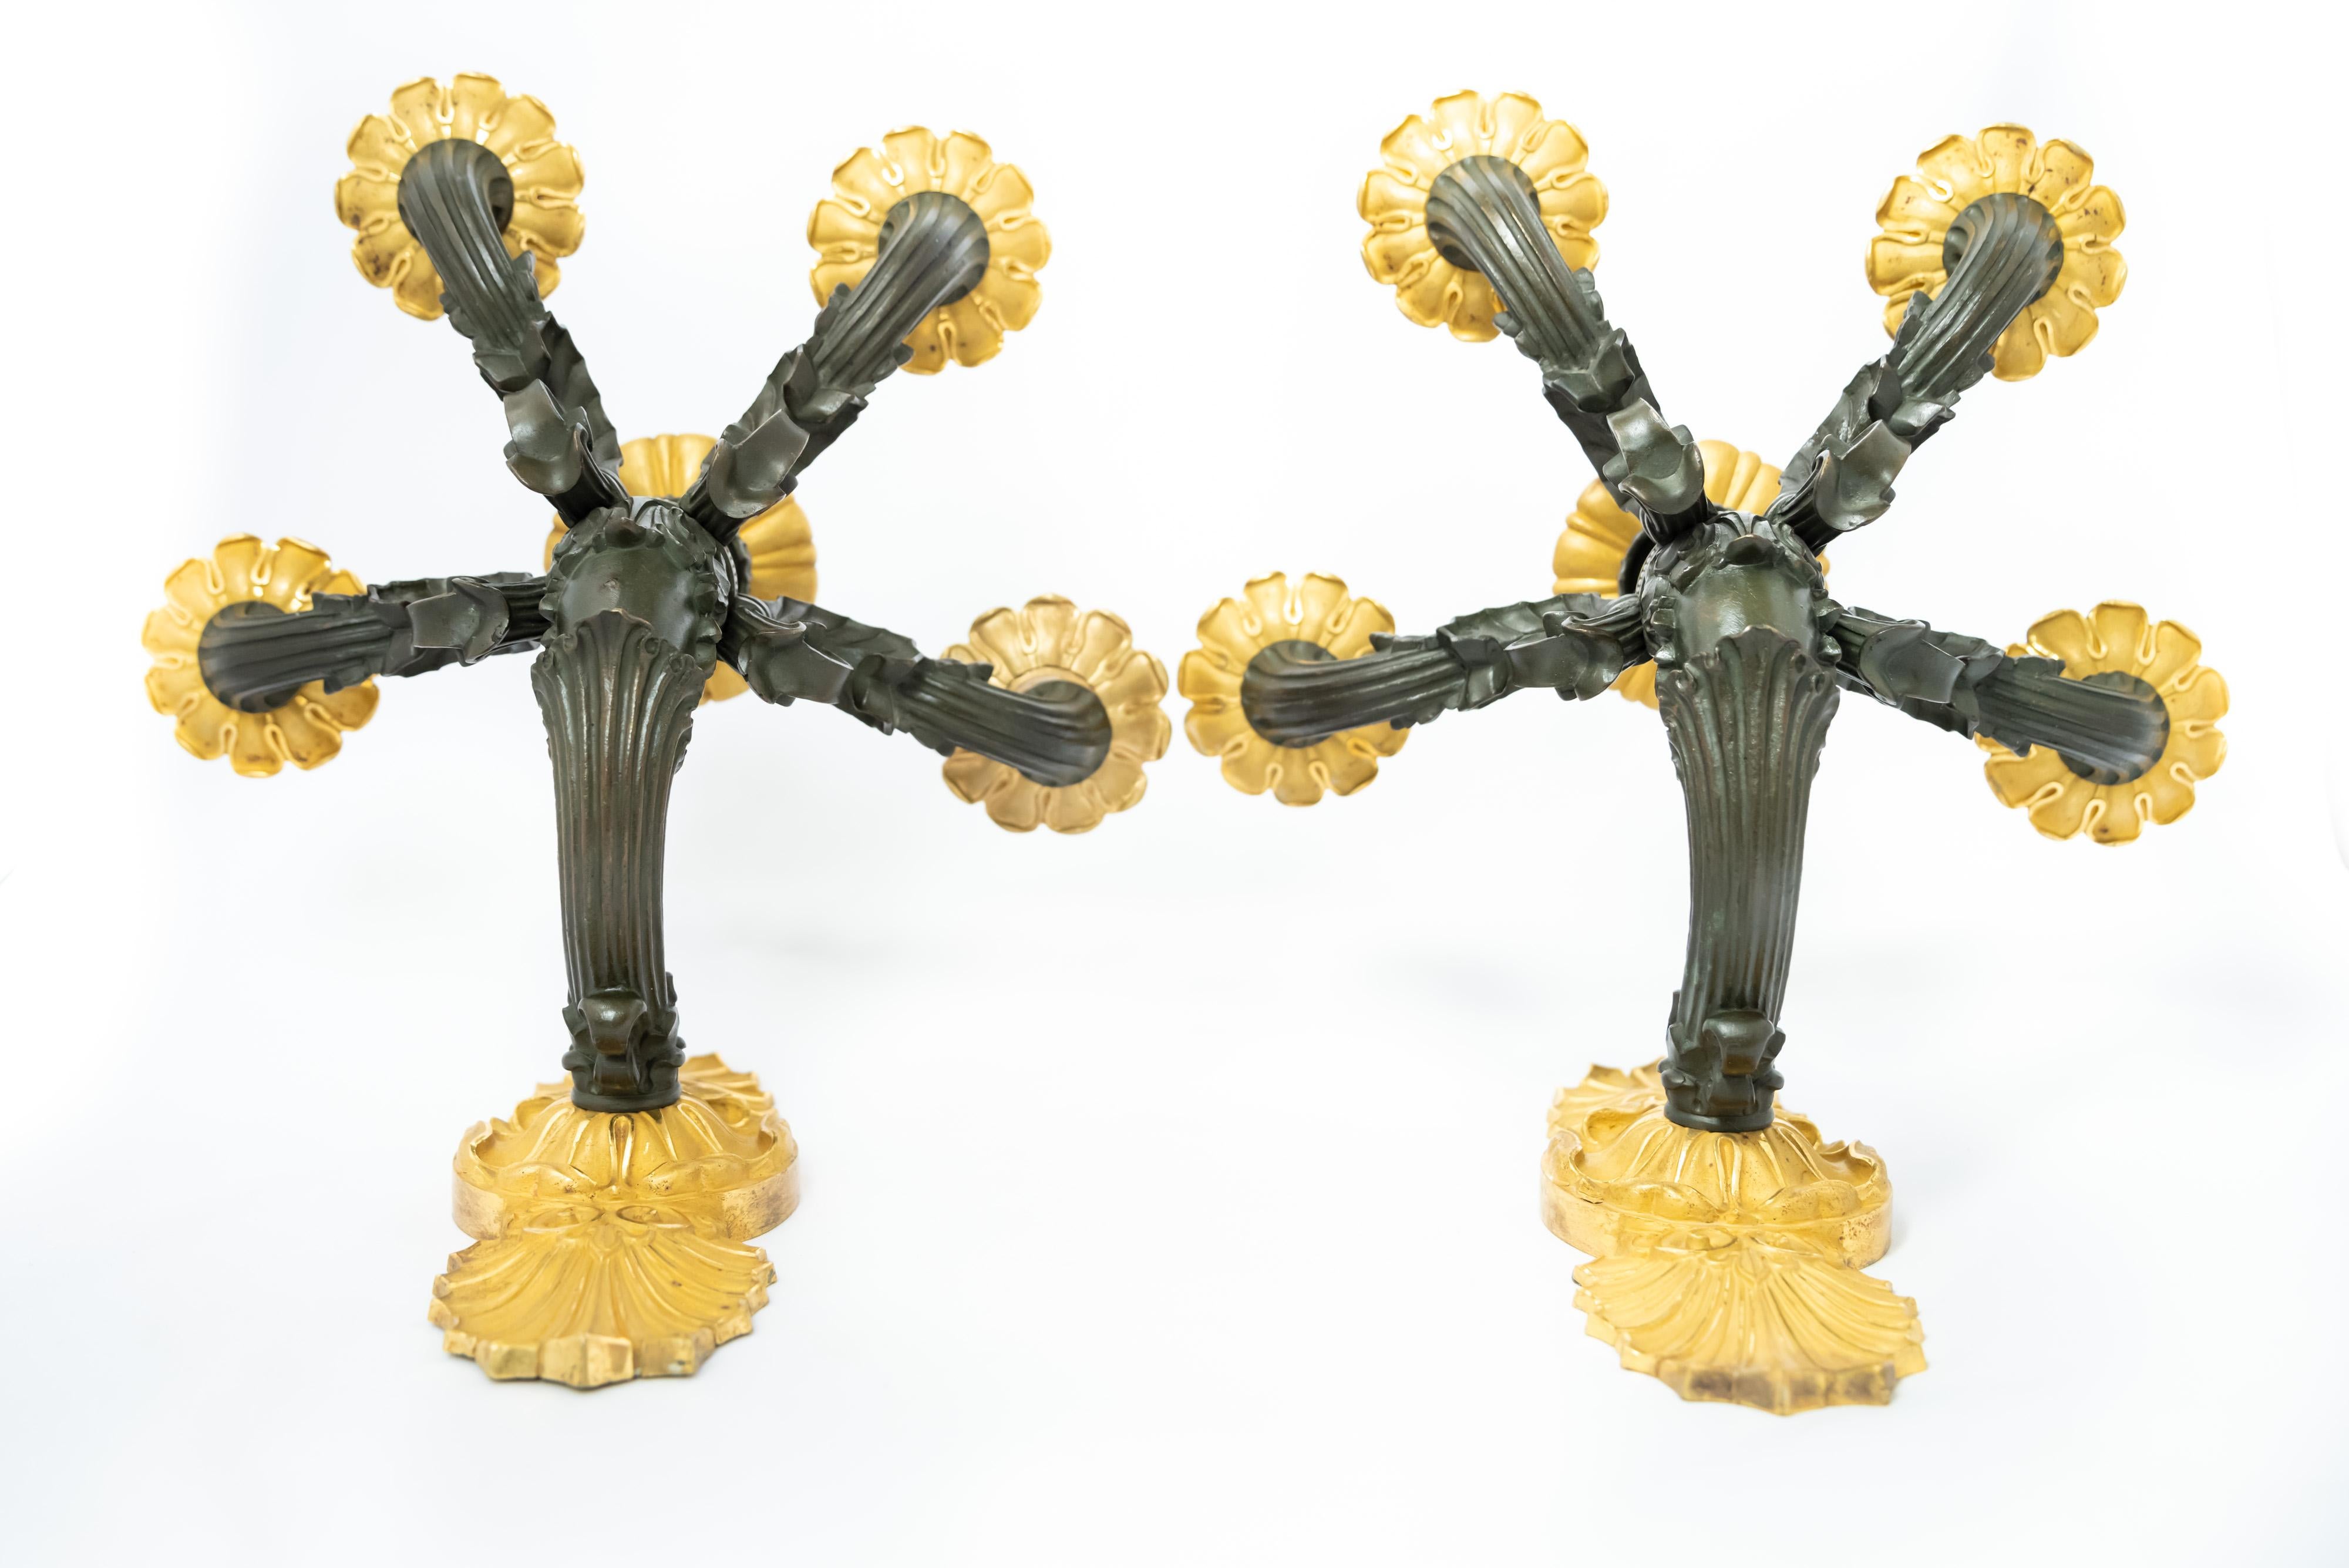 Ein exquisites Paar vergoldete Bronze und schwarzes Patina - Applikationen - aus der französischen Restaurationszeit. Das Paar schwelgt in der Akanthusblatt-Ikonographie des Klassizismus bis zu einem fast abstrakten Grad, wobei der vergoldete